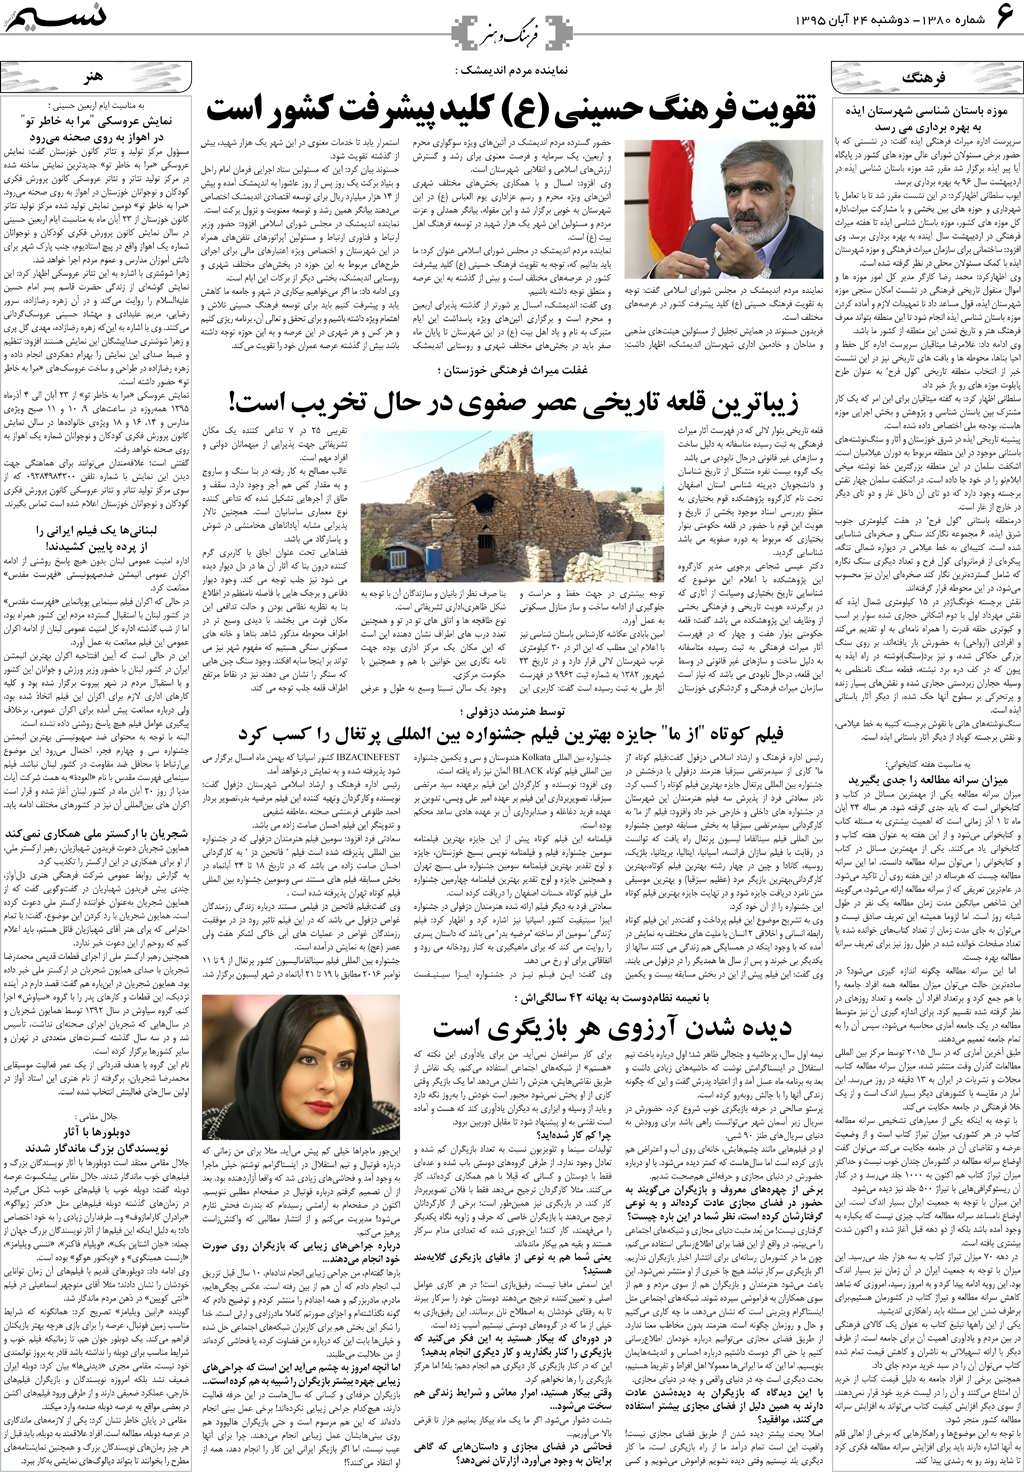 صفحه فرهنگ و هنر روزنامه نسیم شماره 1380